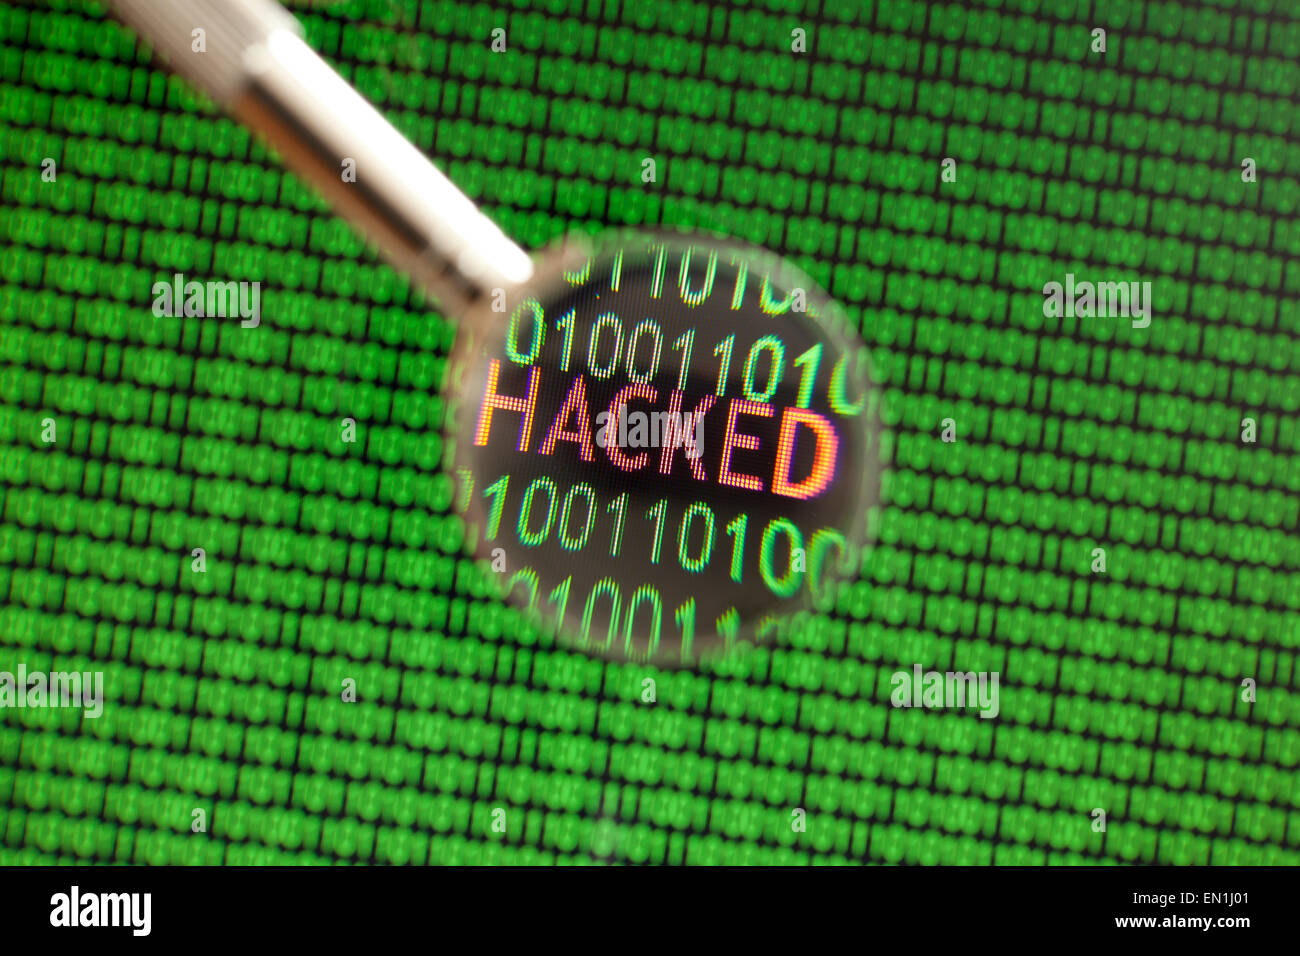 Hacked messaggio sullo schermo del computer Foto Stock